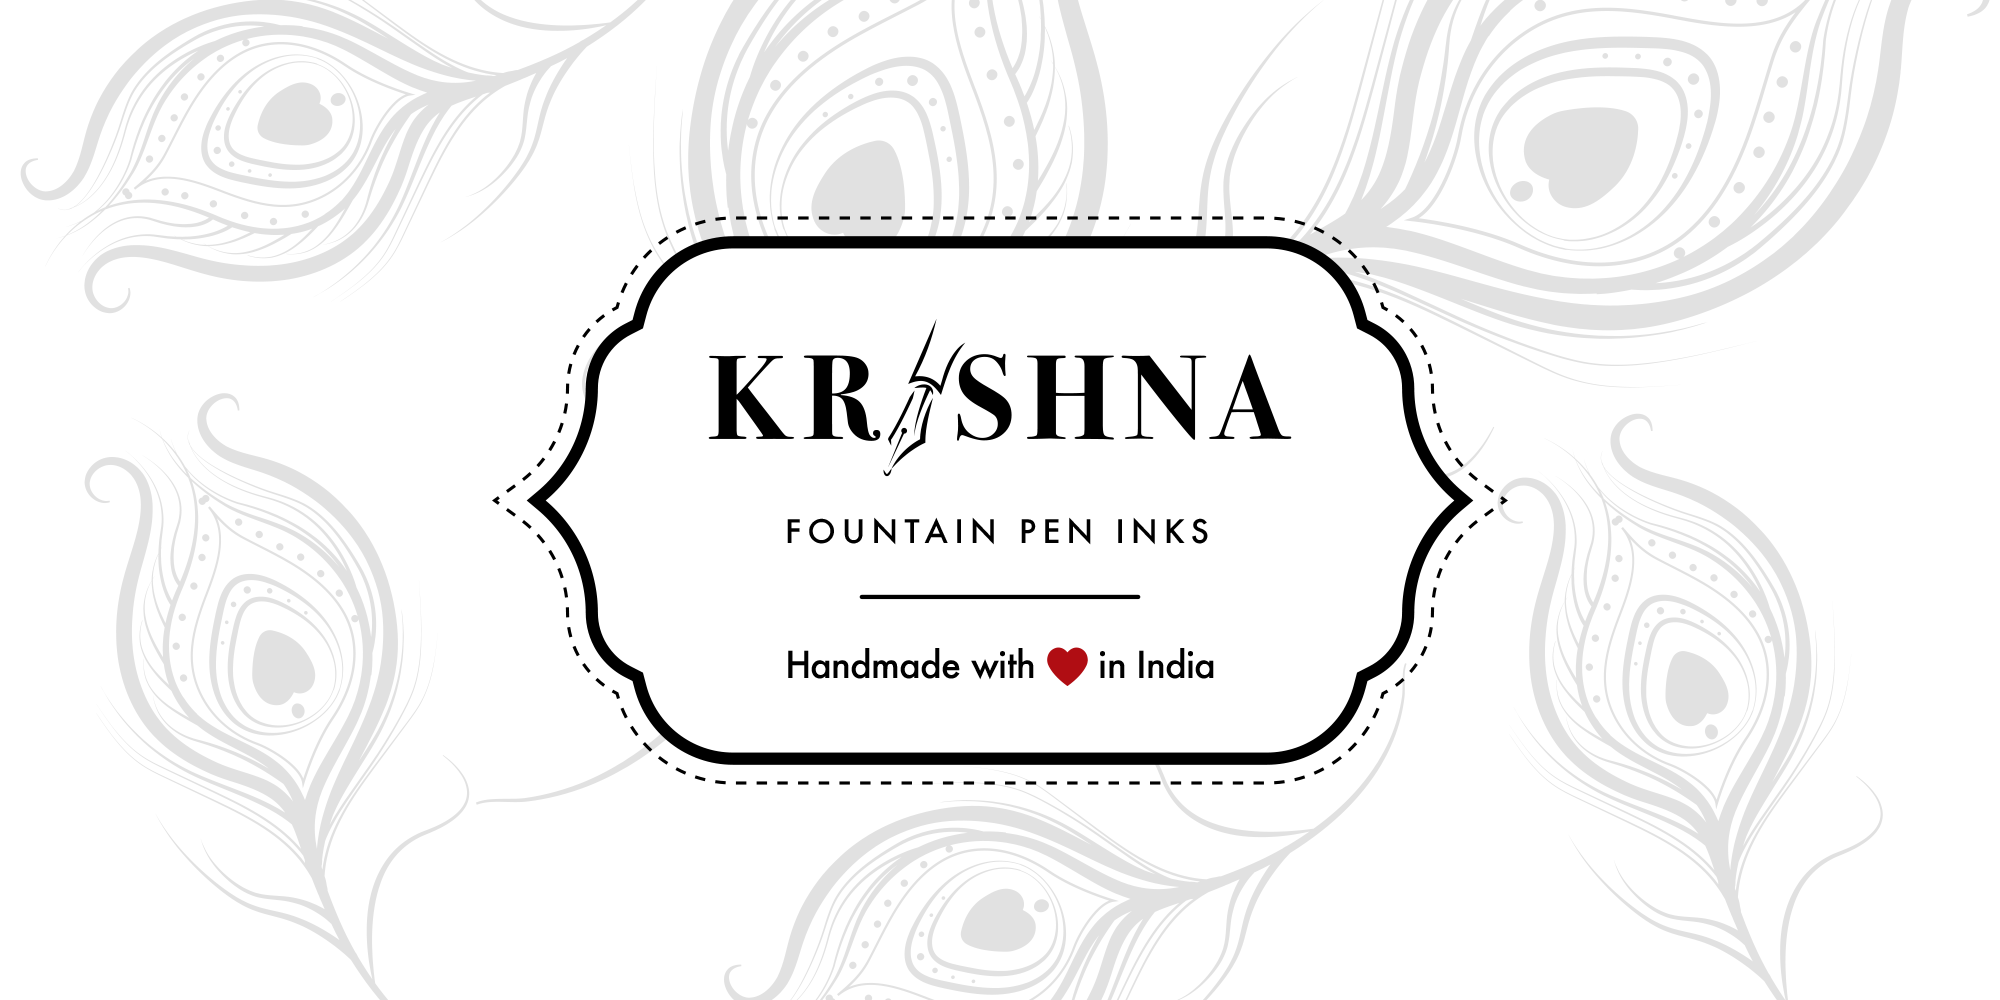 Krishna Images - Free Download on Freepik